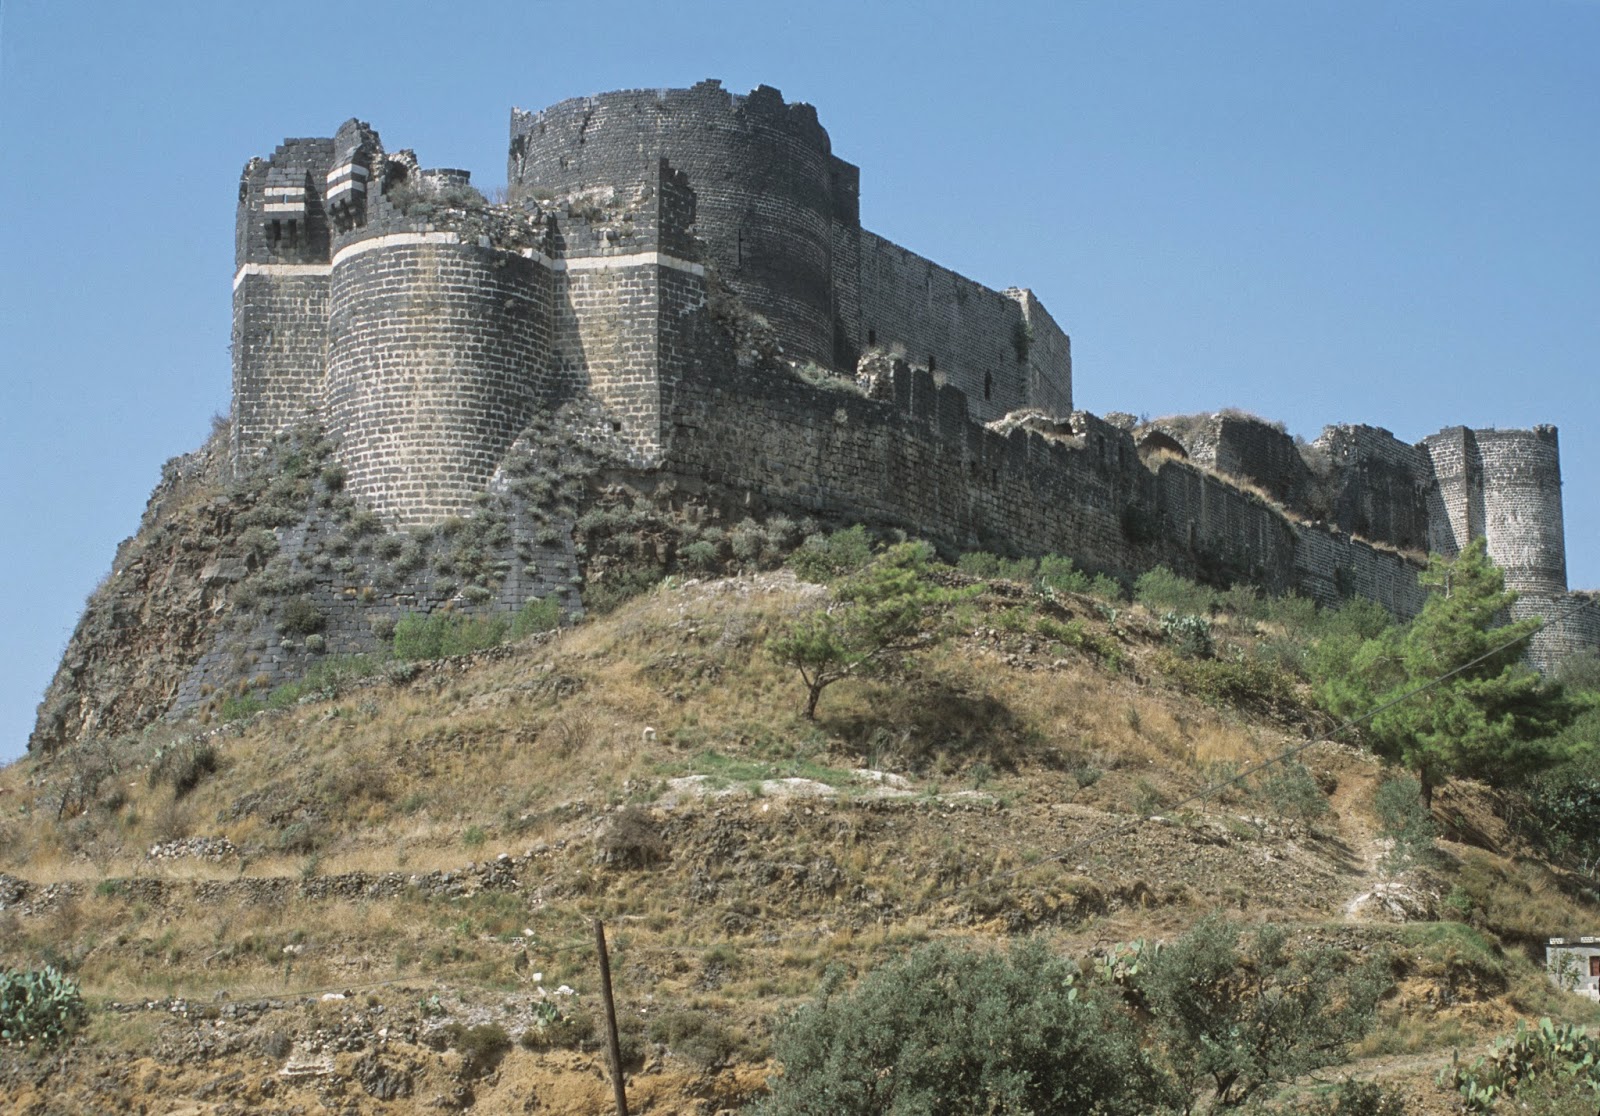 Margat castle